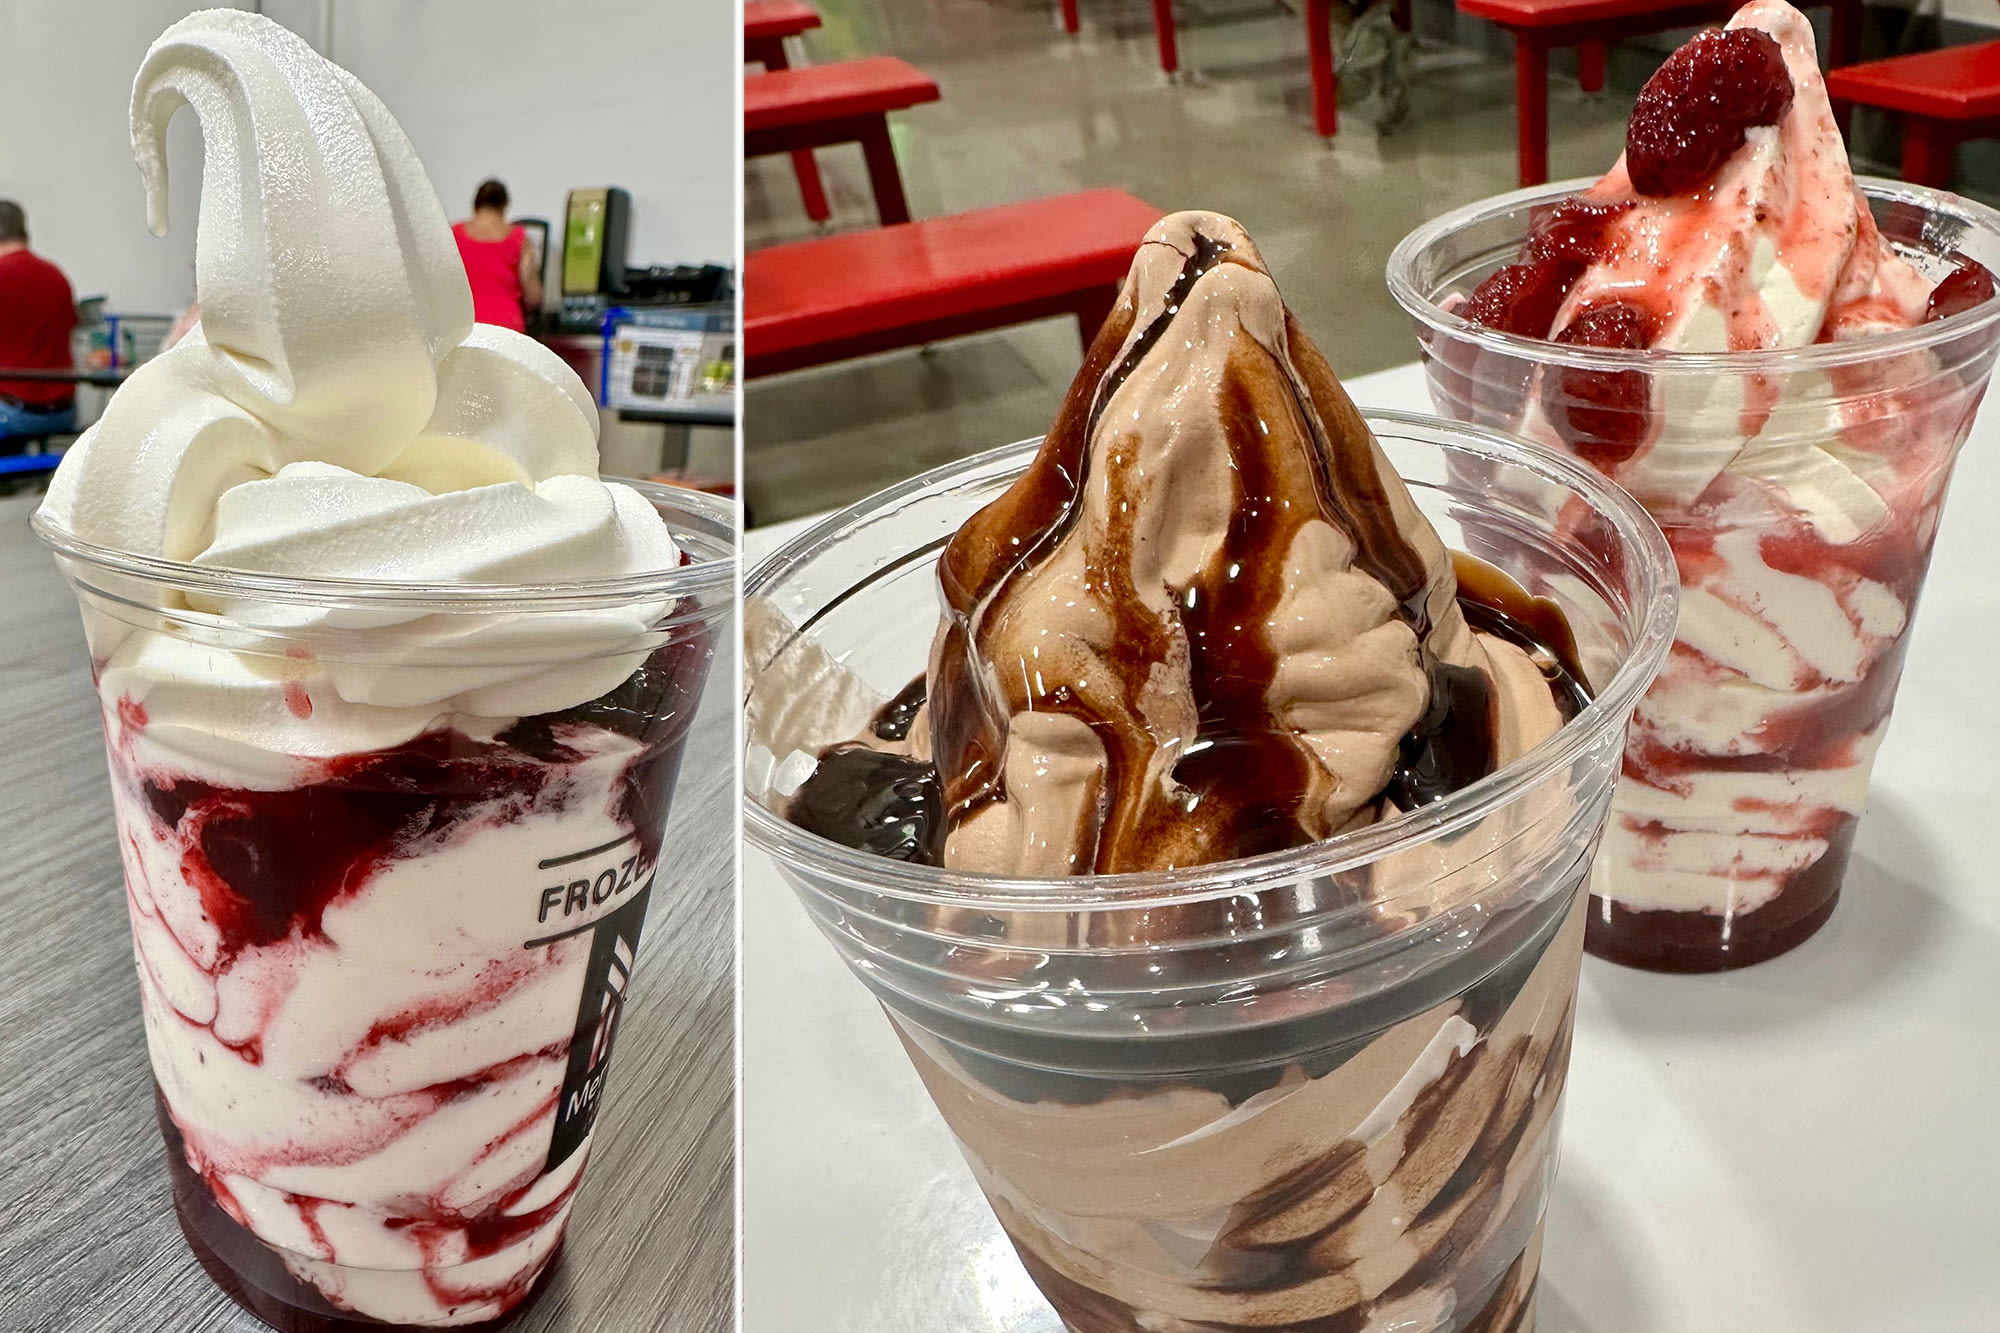 Costco vs. Sam’s Club — which warehouse chain has the best soft-serve ice cream?